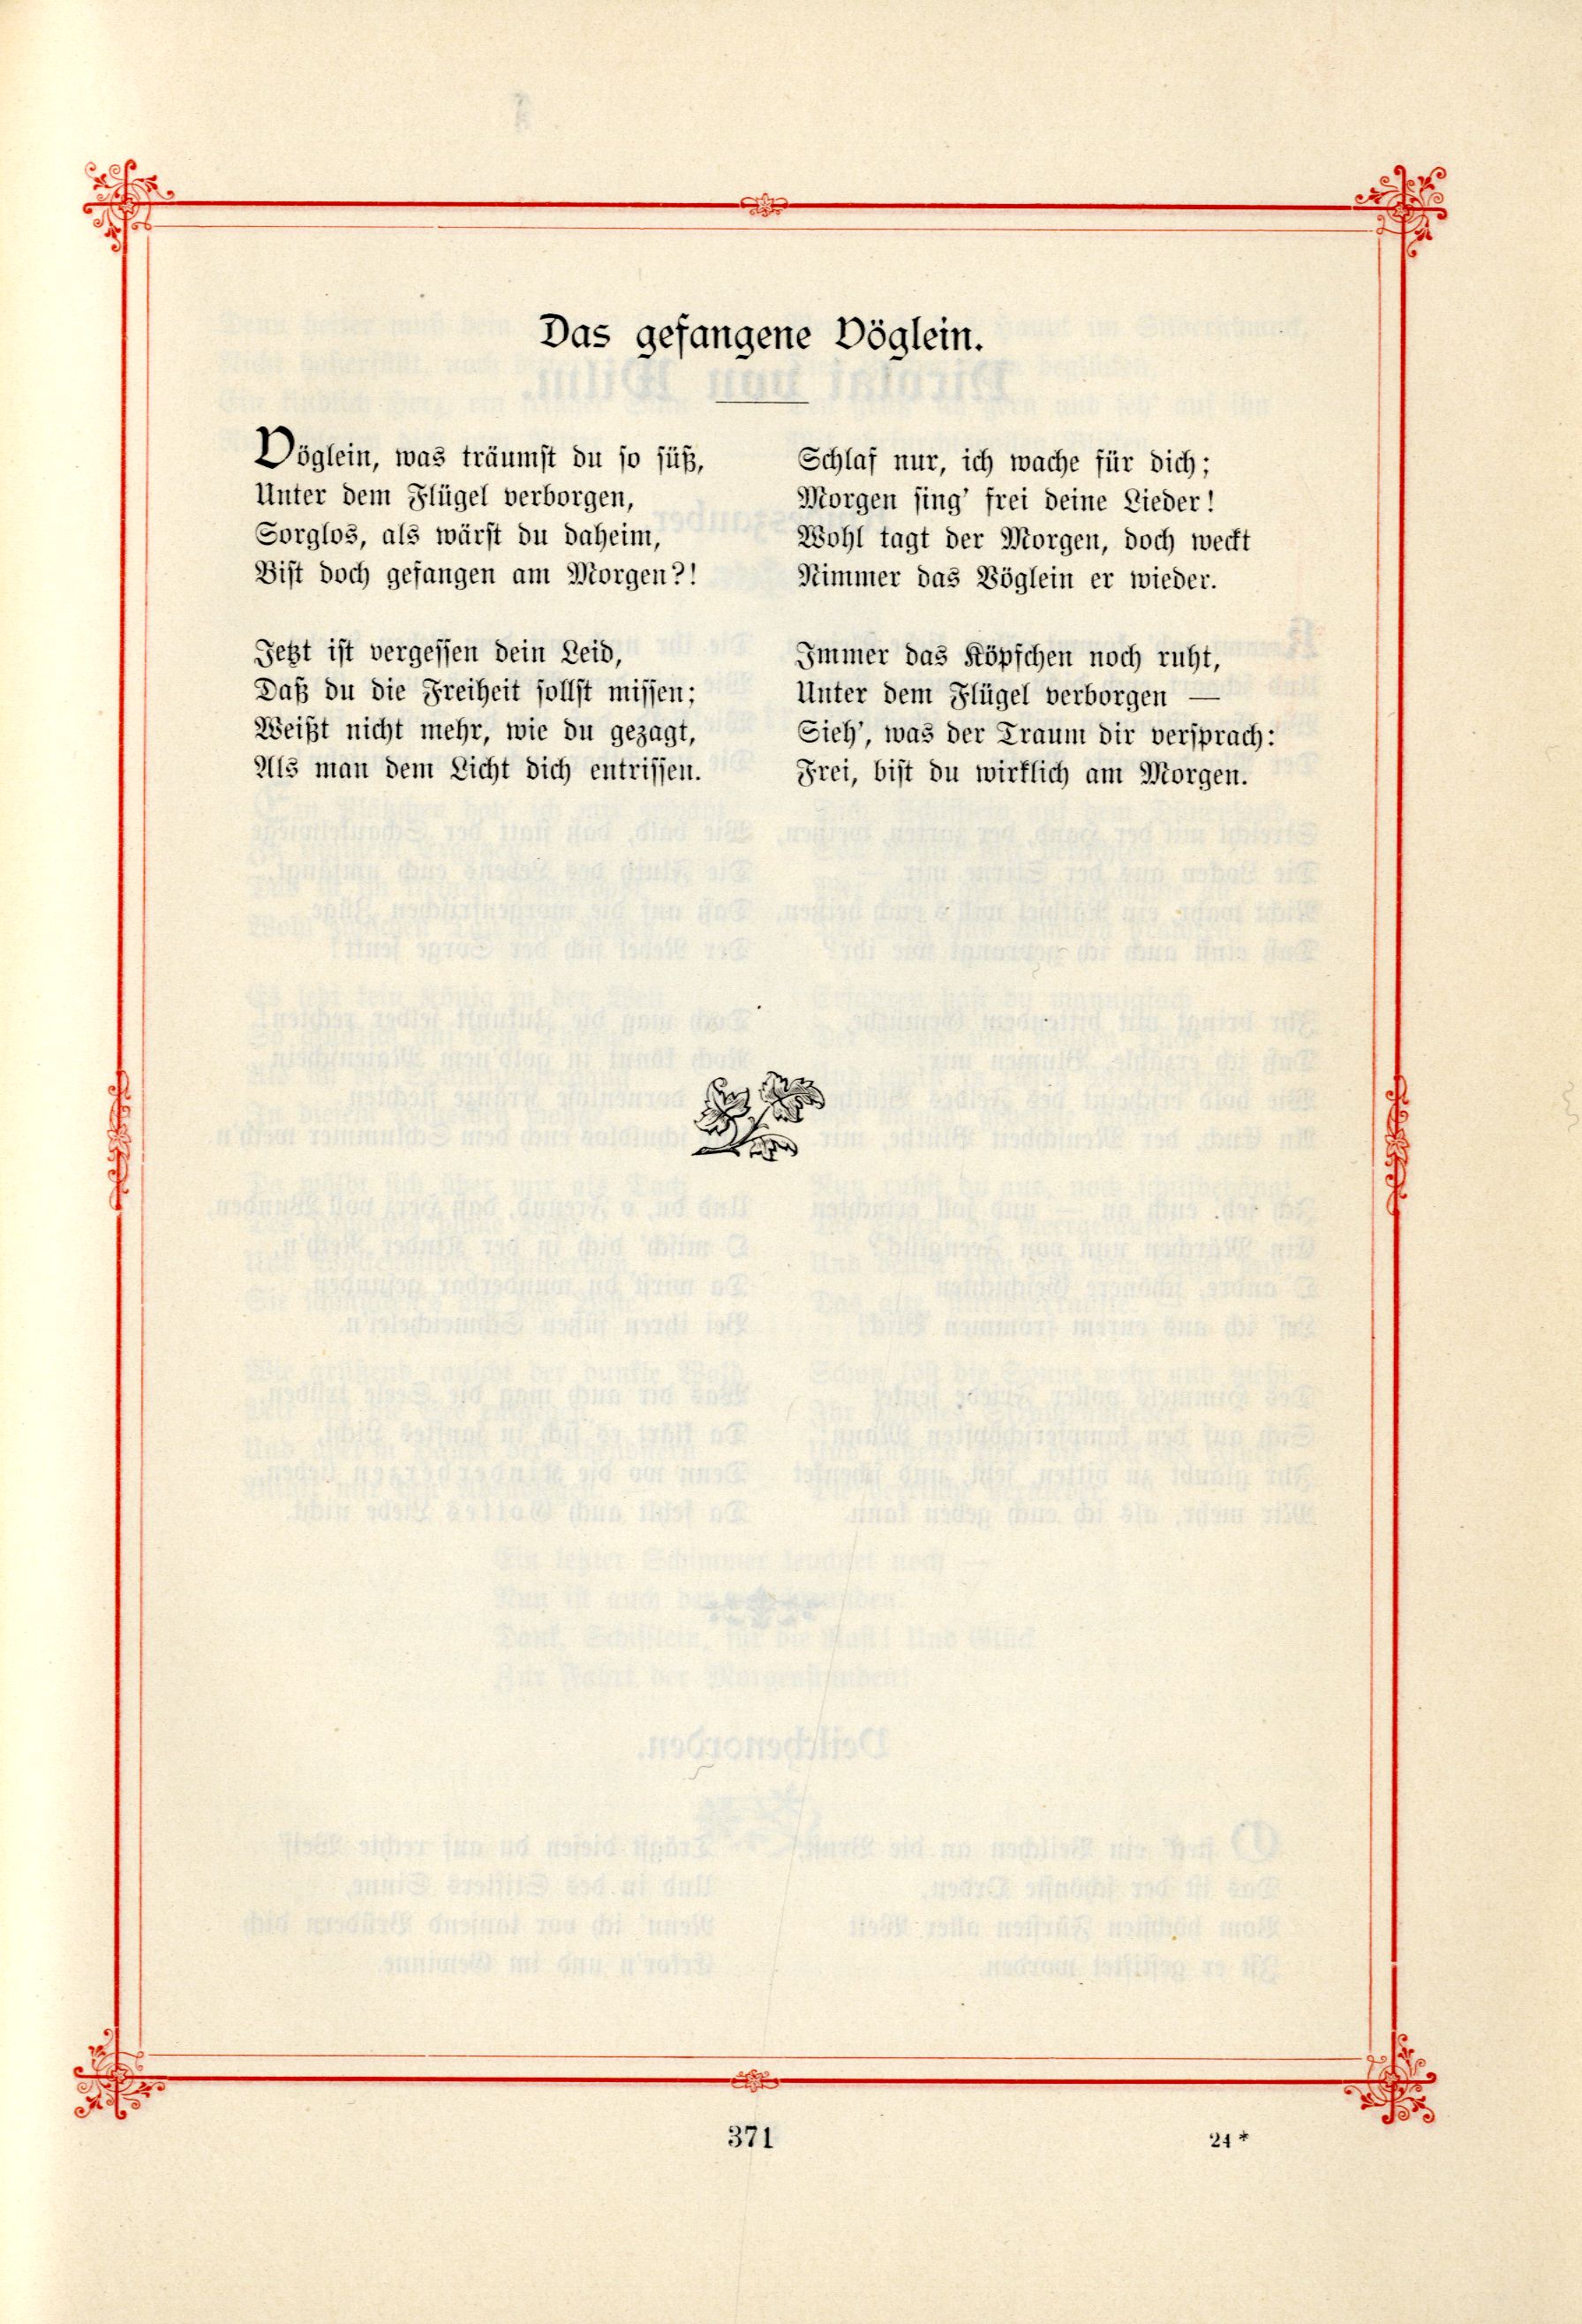 Das Baltische Dichterbuch (1895) | 417. (371) Main body of text